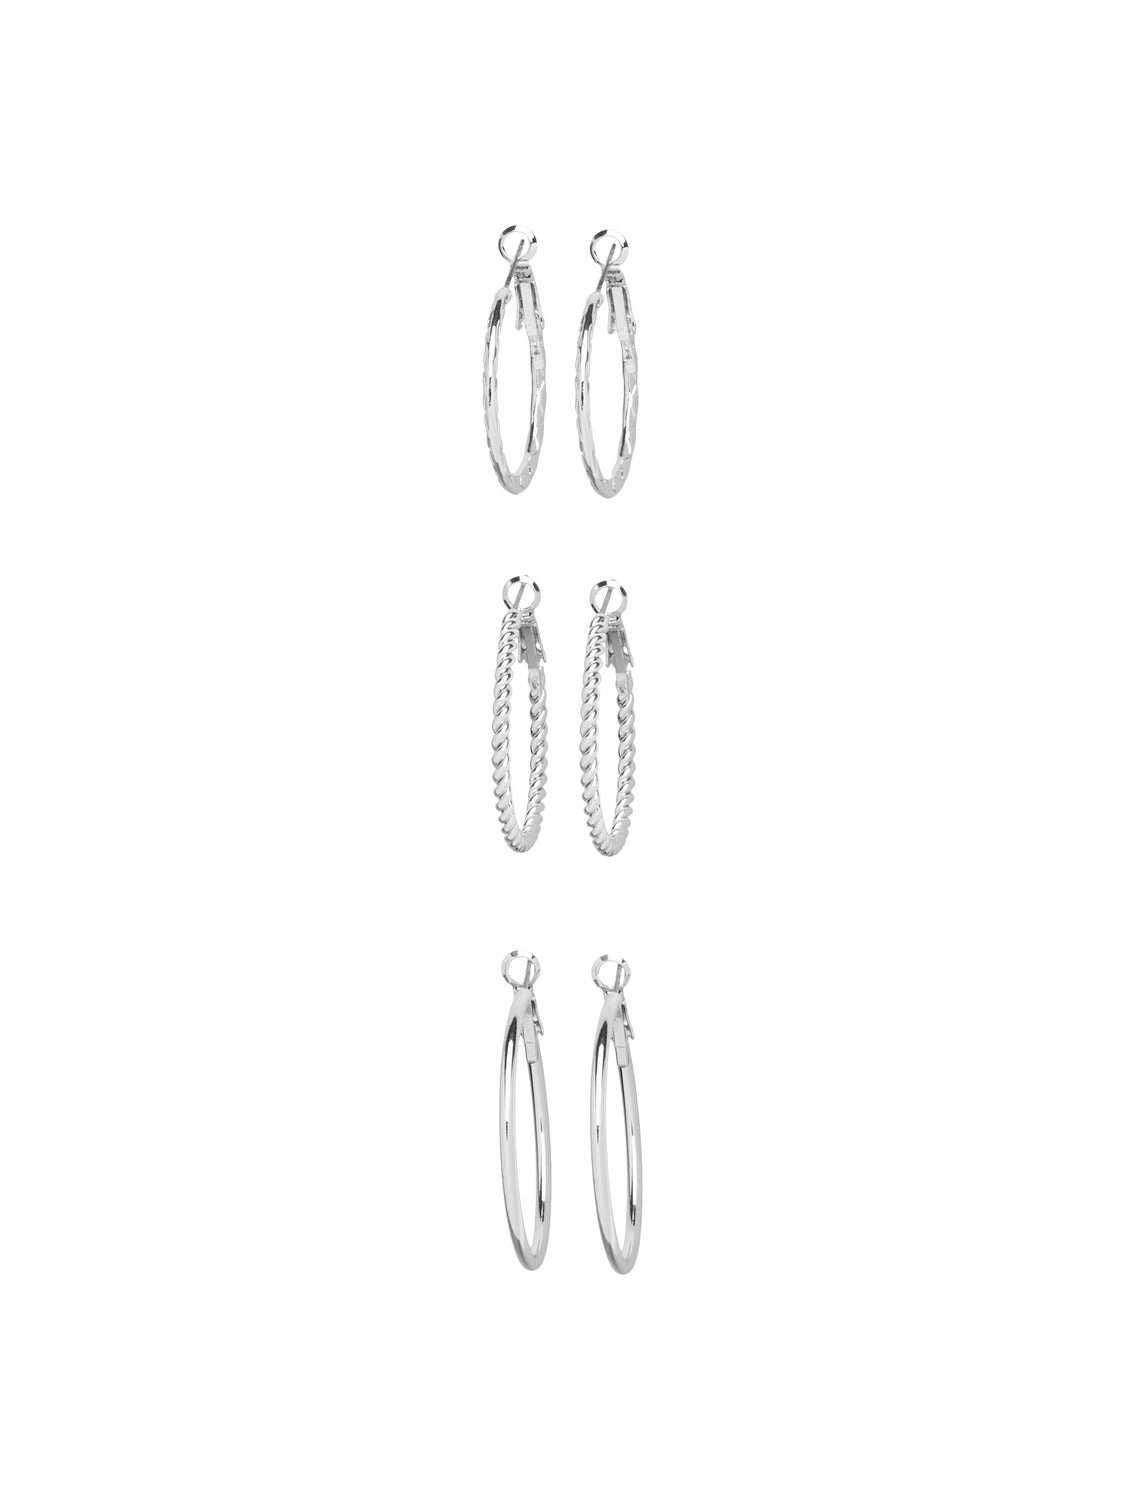 PCLIFFIE Earrings - Silver Colour